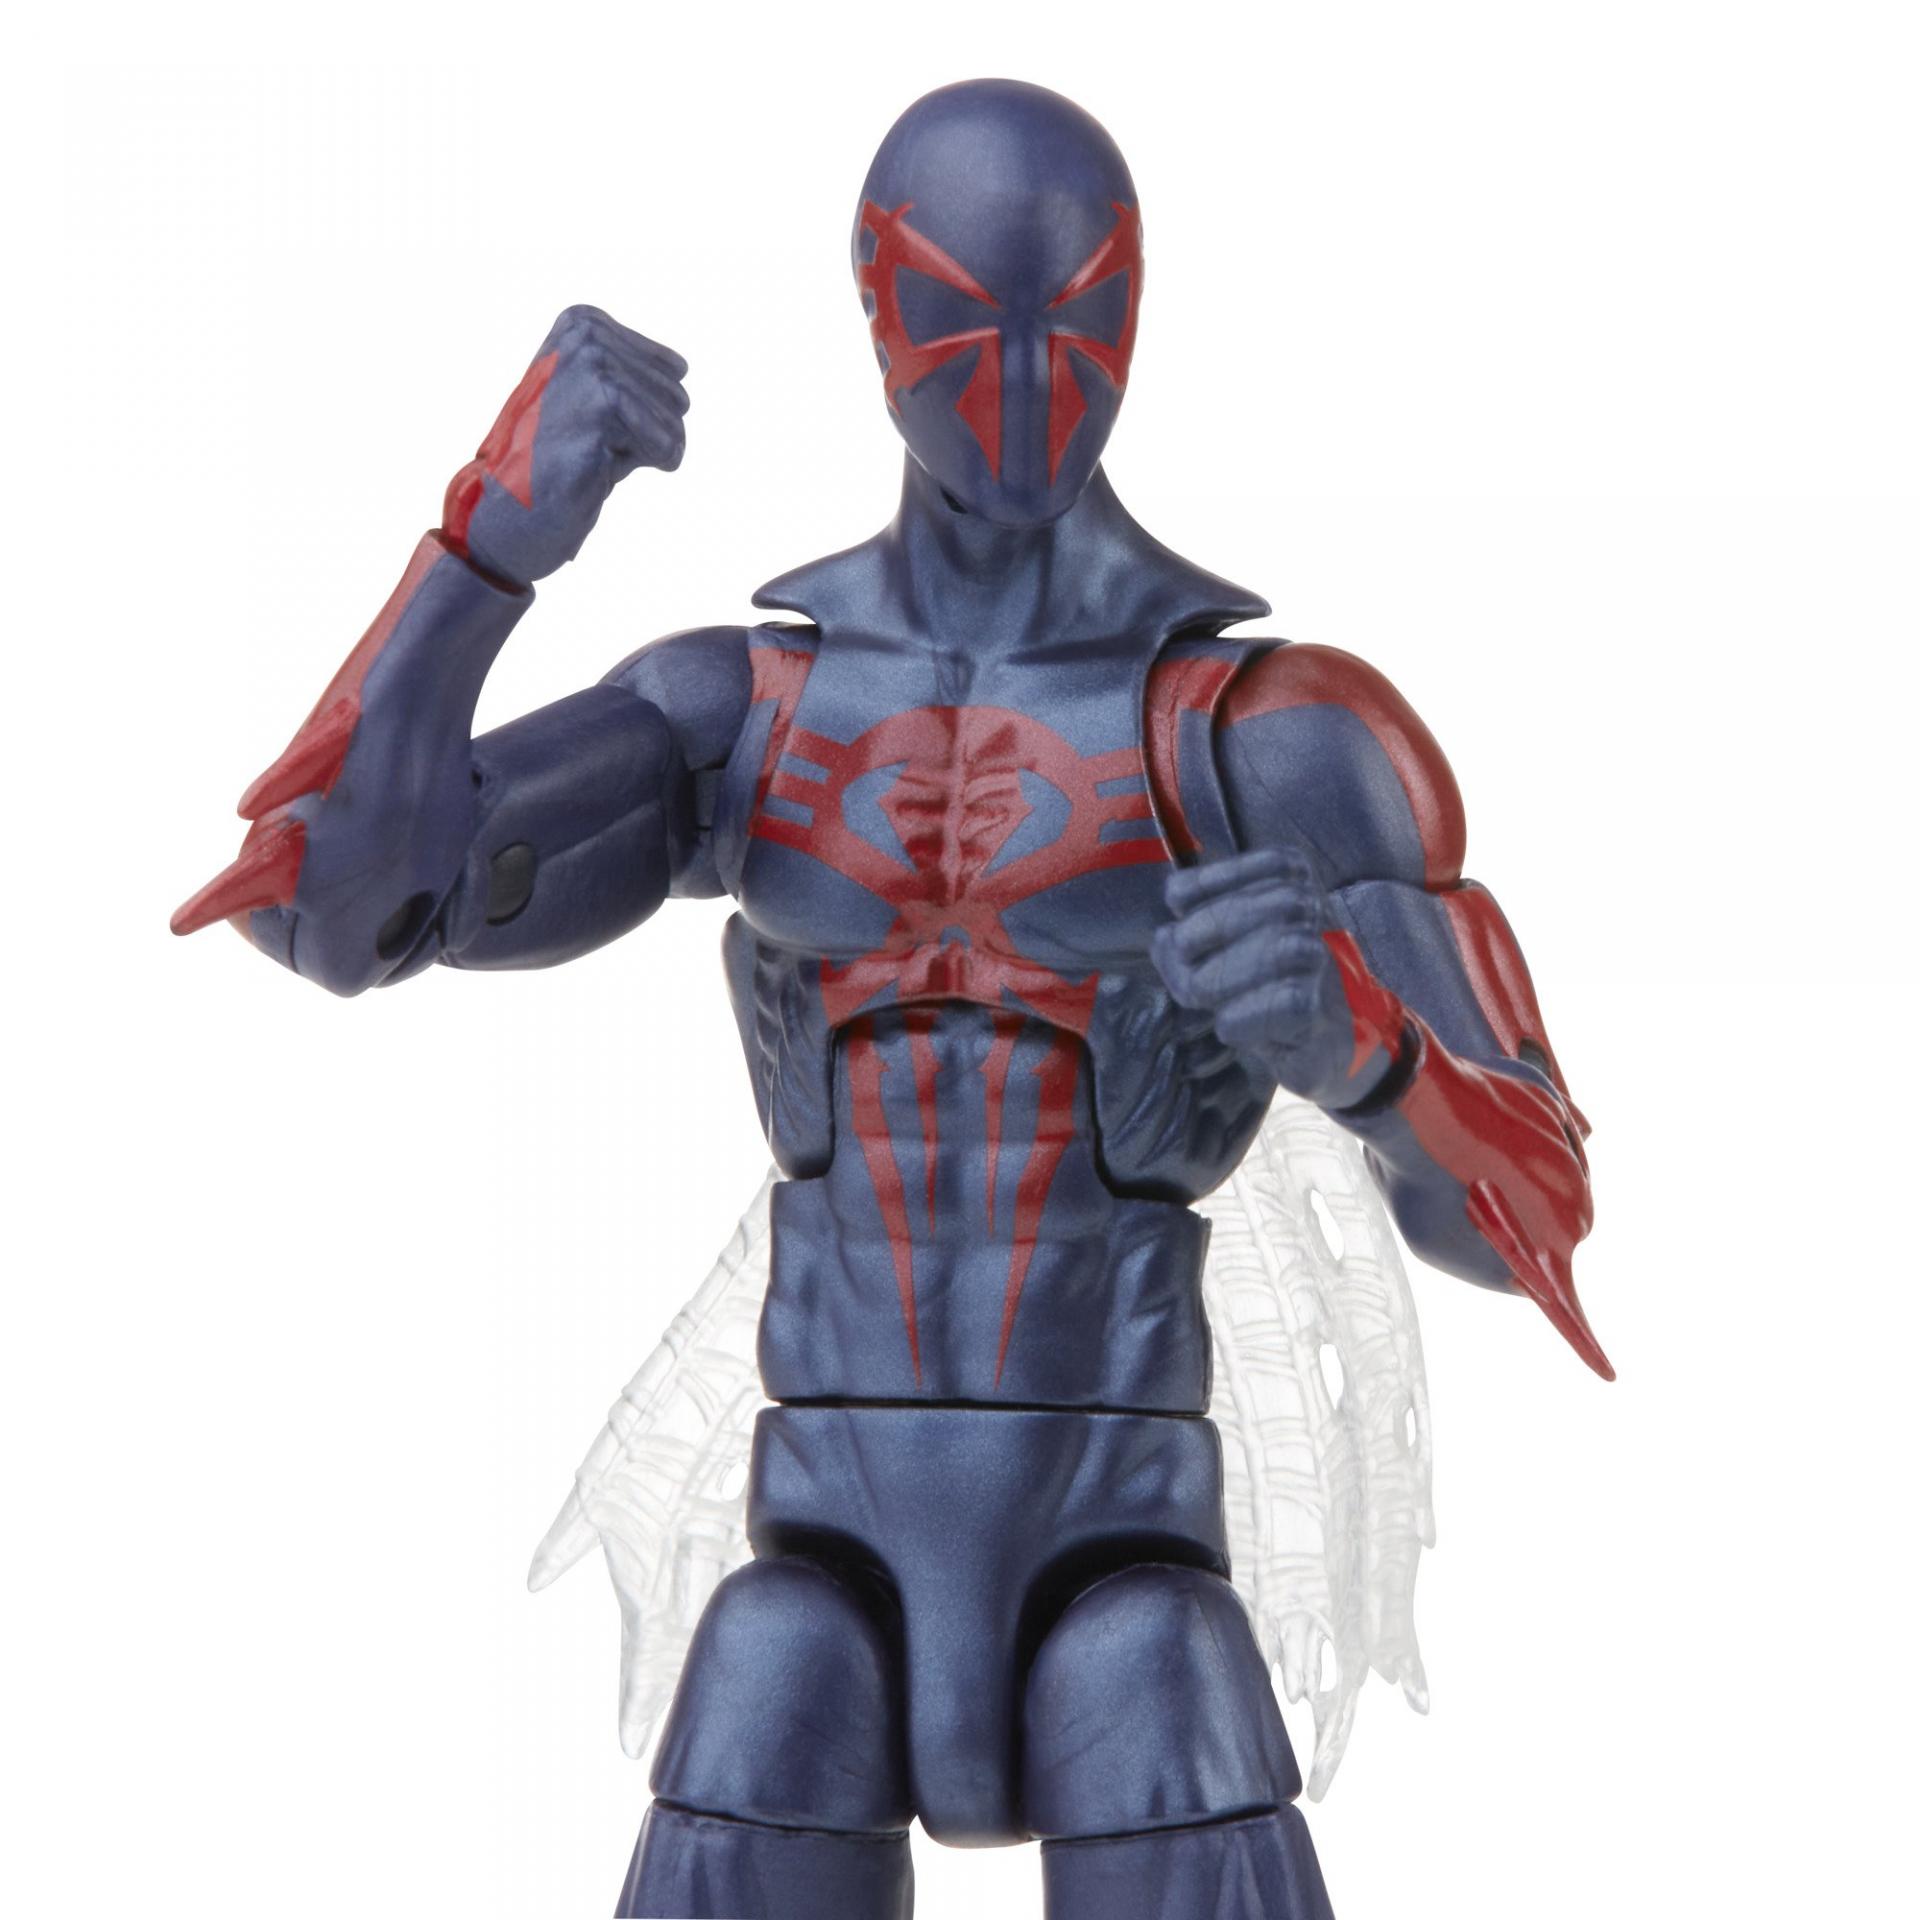 Marvel legends series hasbro spider man 2099 7